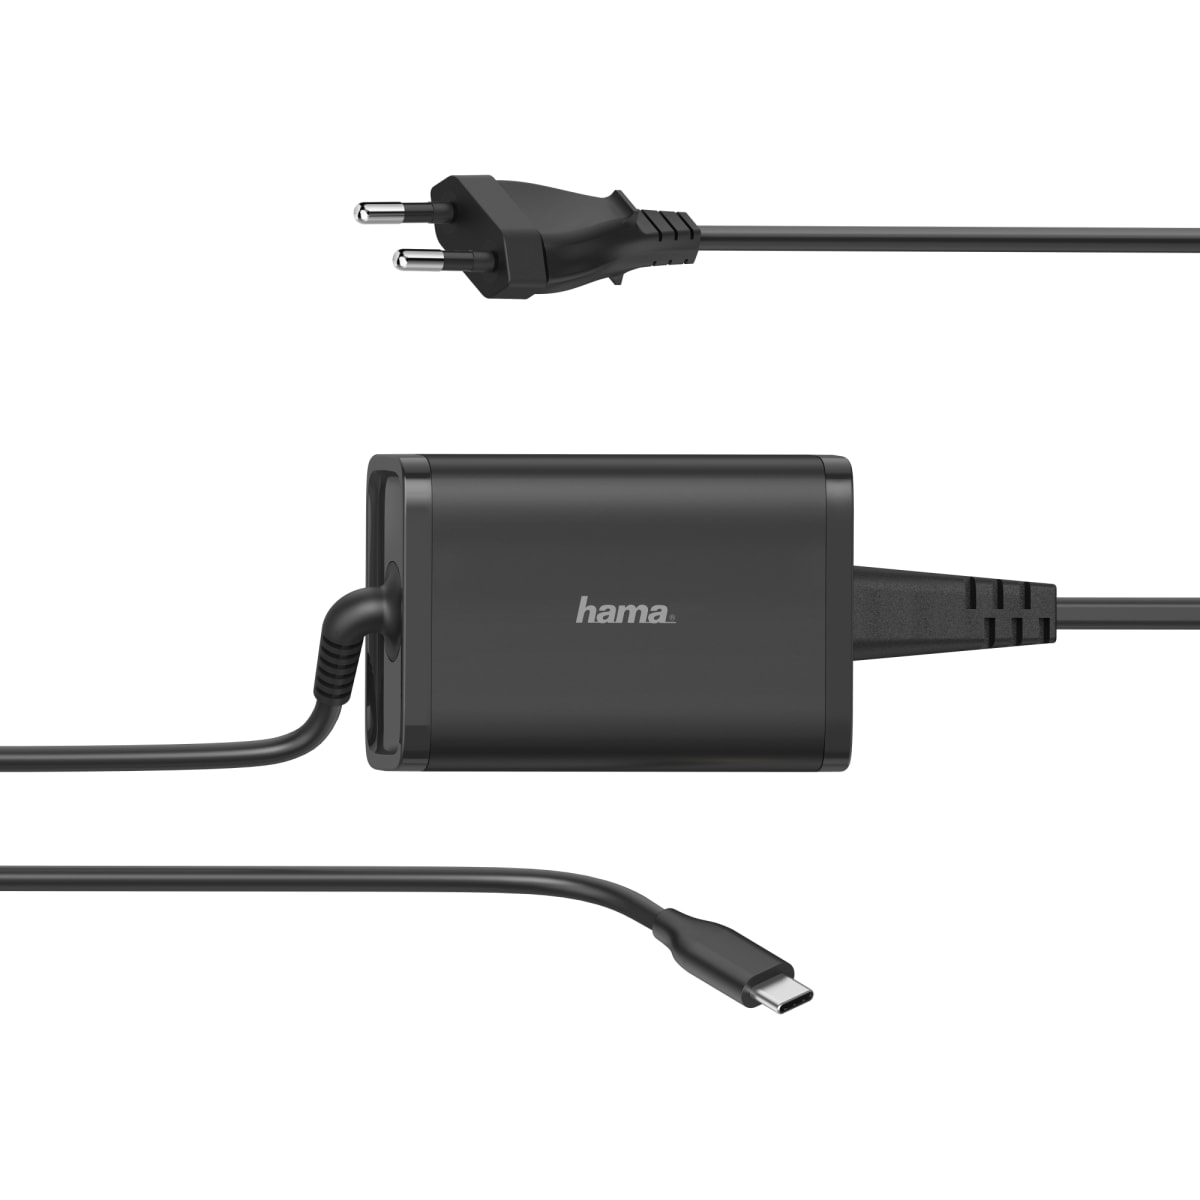 Hama 5-20V/65W USB-C kannettavan laturi | Karkkainen.com verkkokauppa